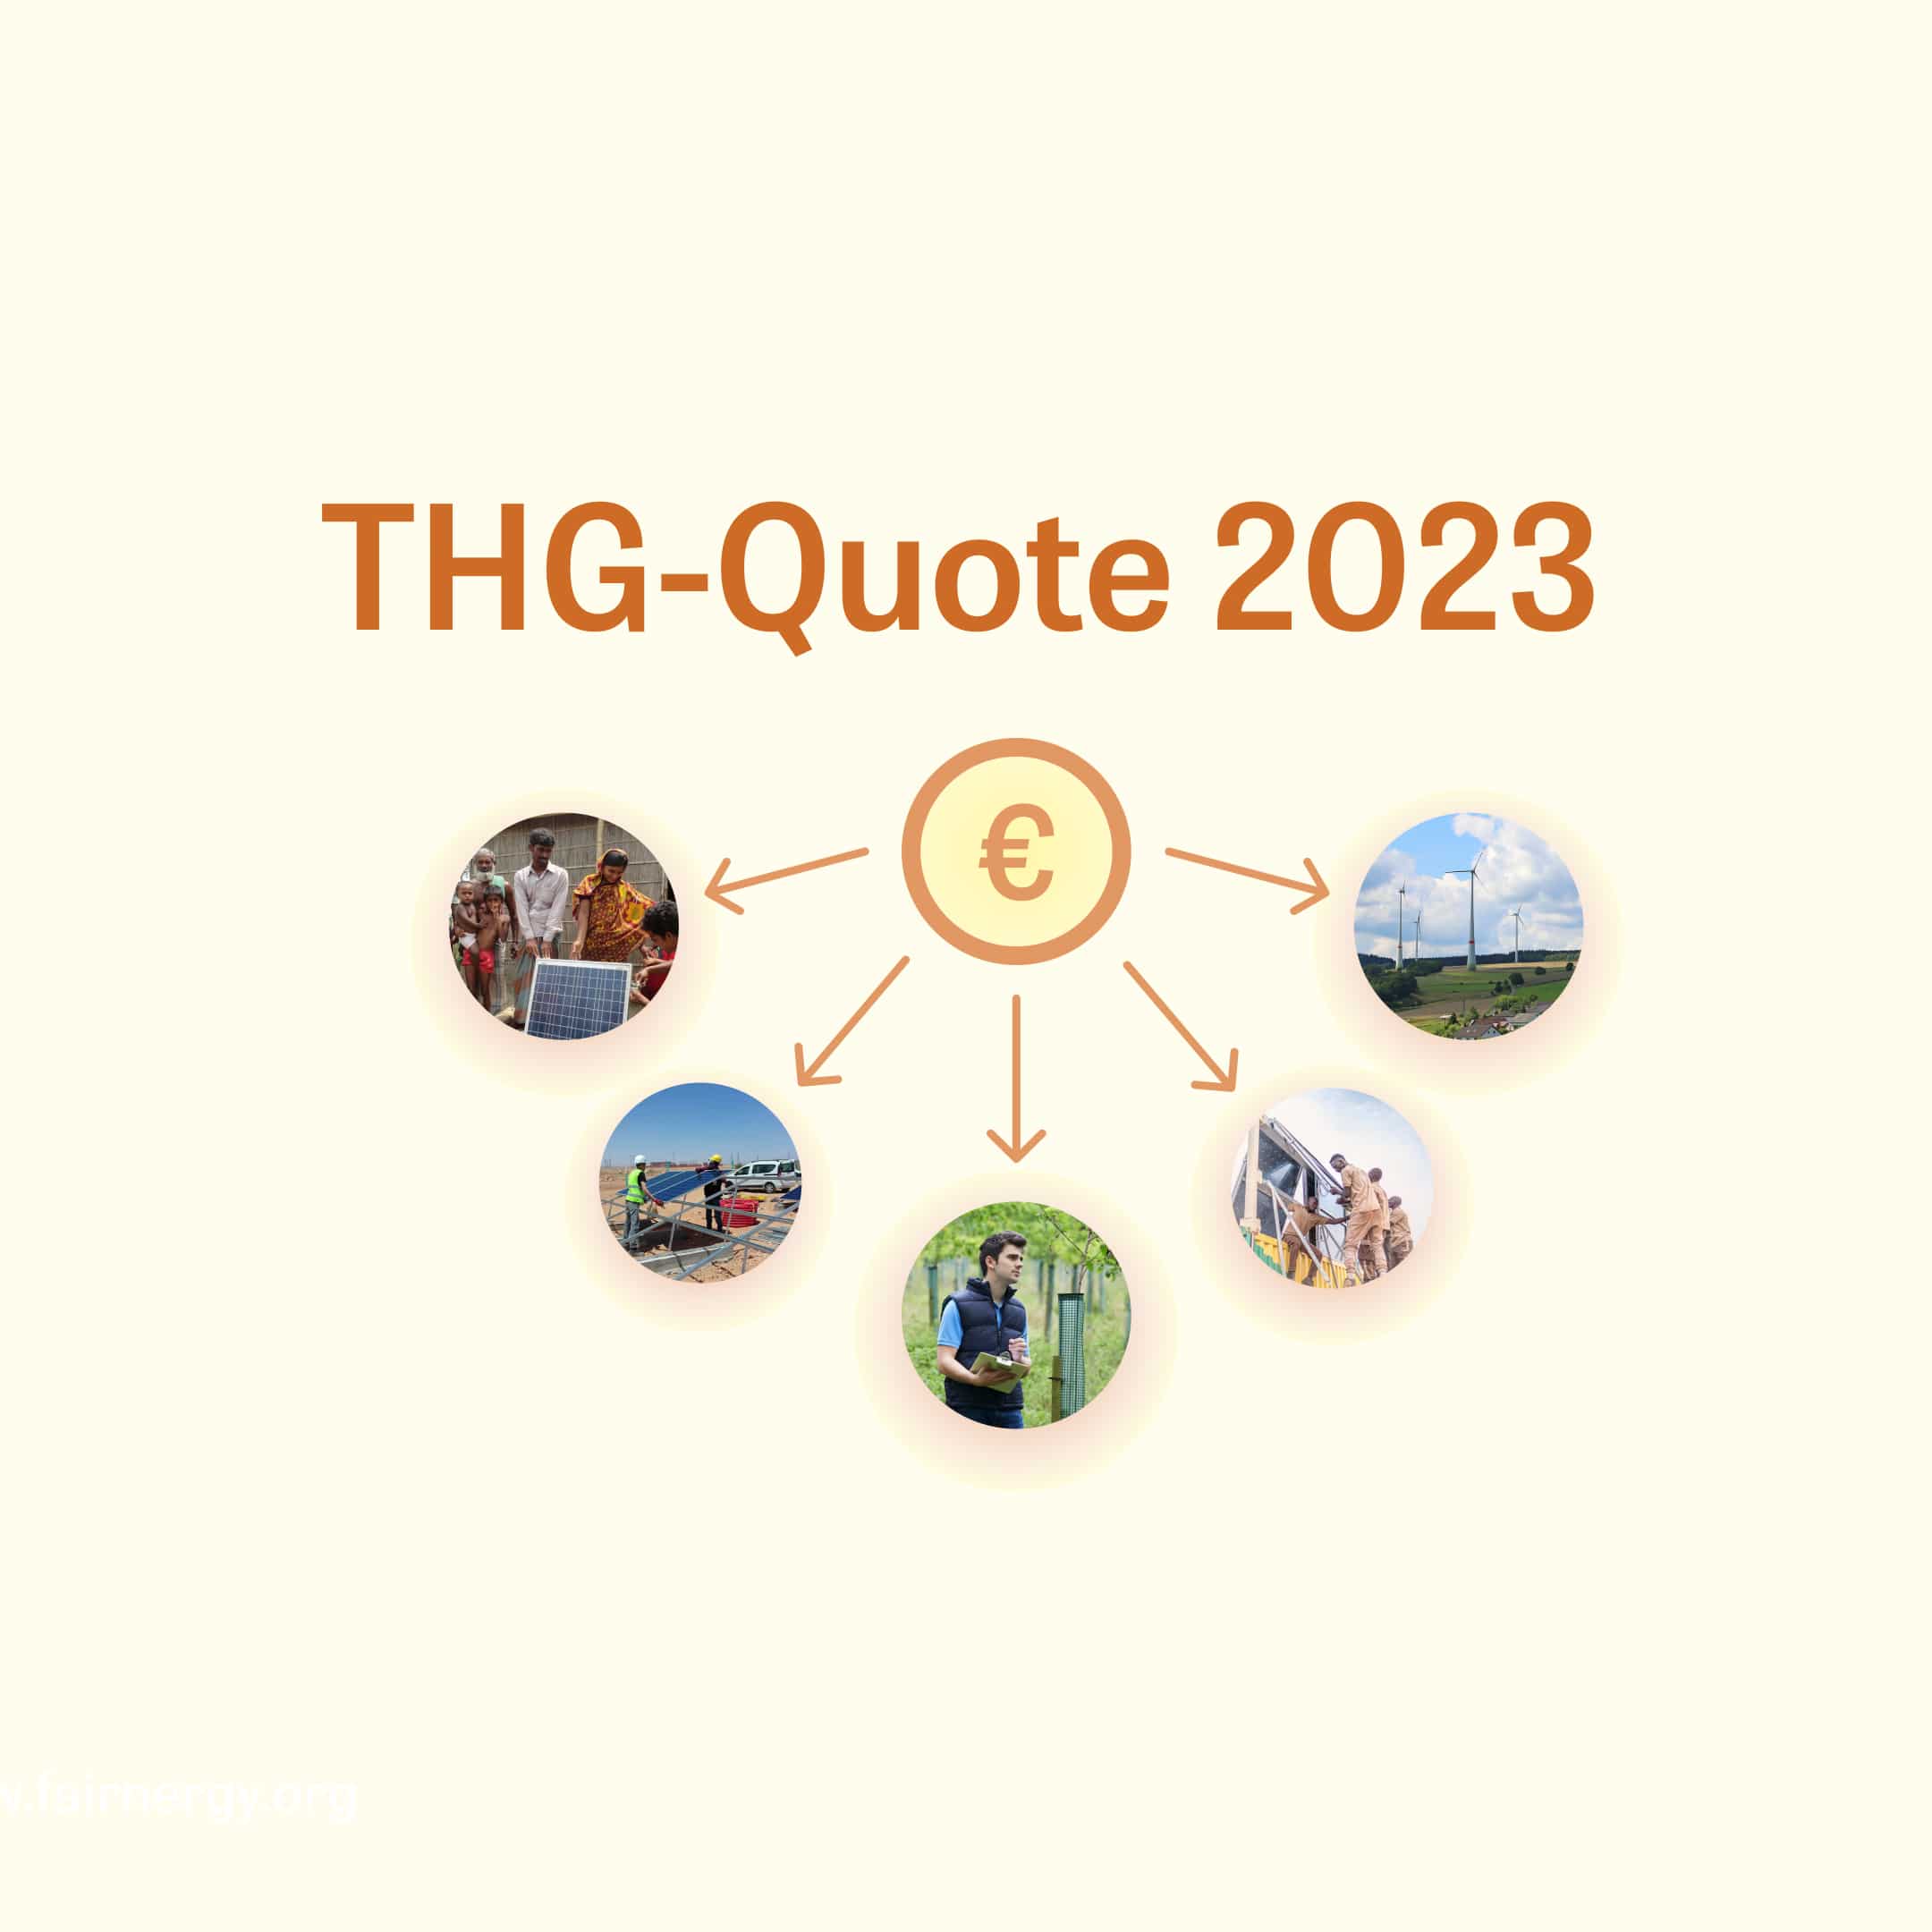 THG-Quote 2023